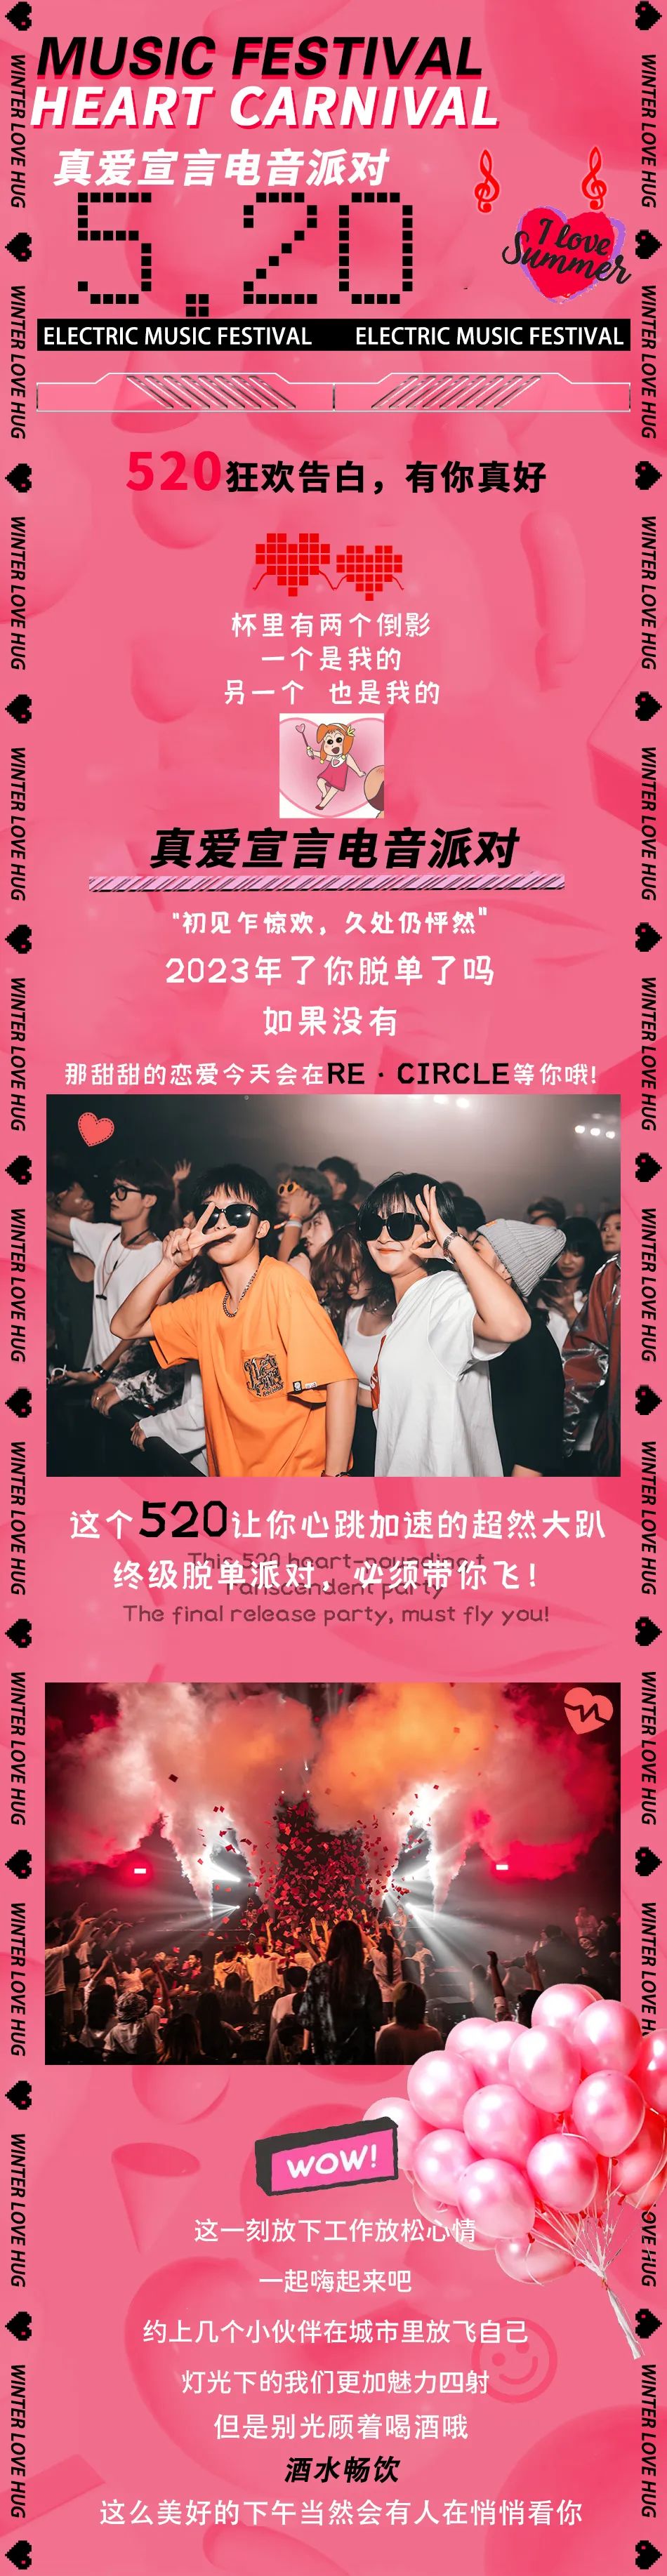 2023YOULO心动狂欢电音派对-南京站